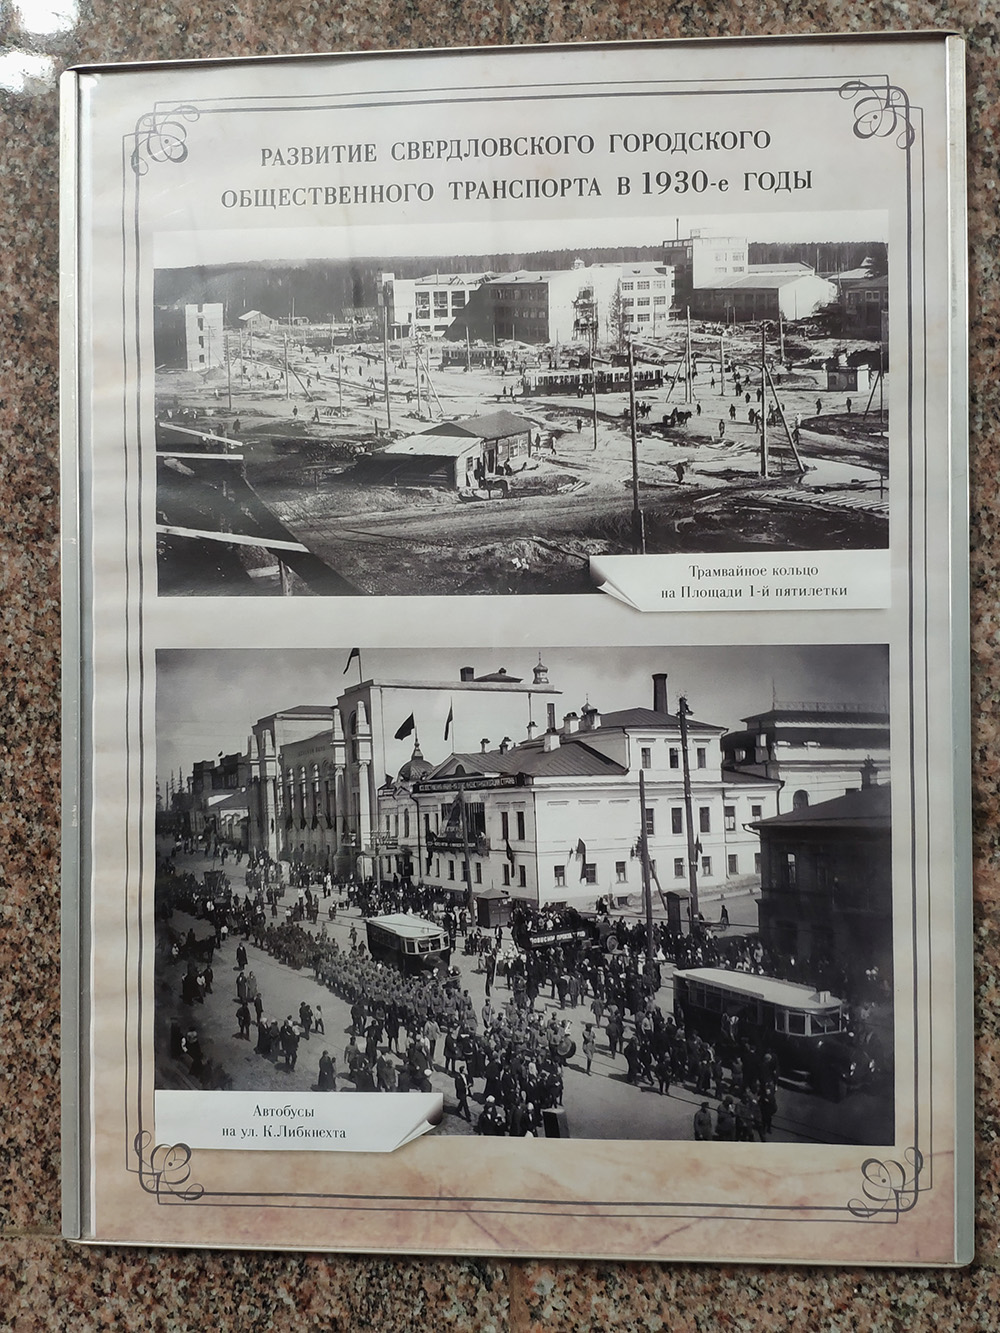 На Площади 1905 года мини⁠-⁠выставка по истории общественного транспорта в Екатеринбурге. С интересом смотрю фотографии